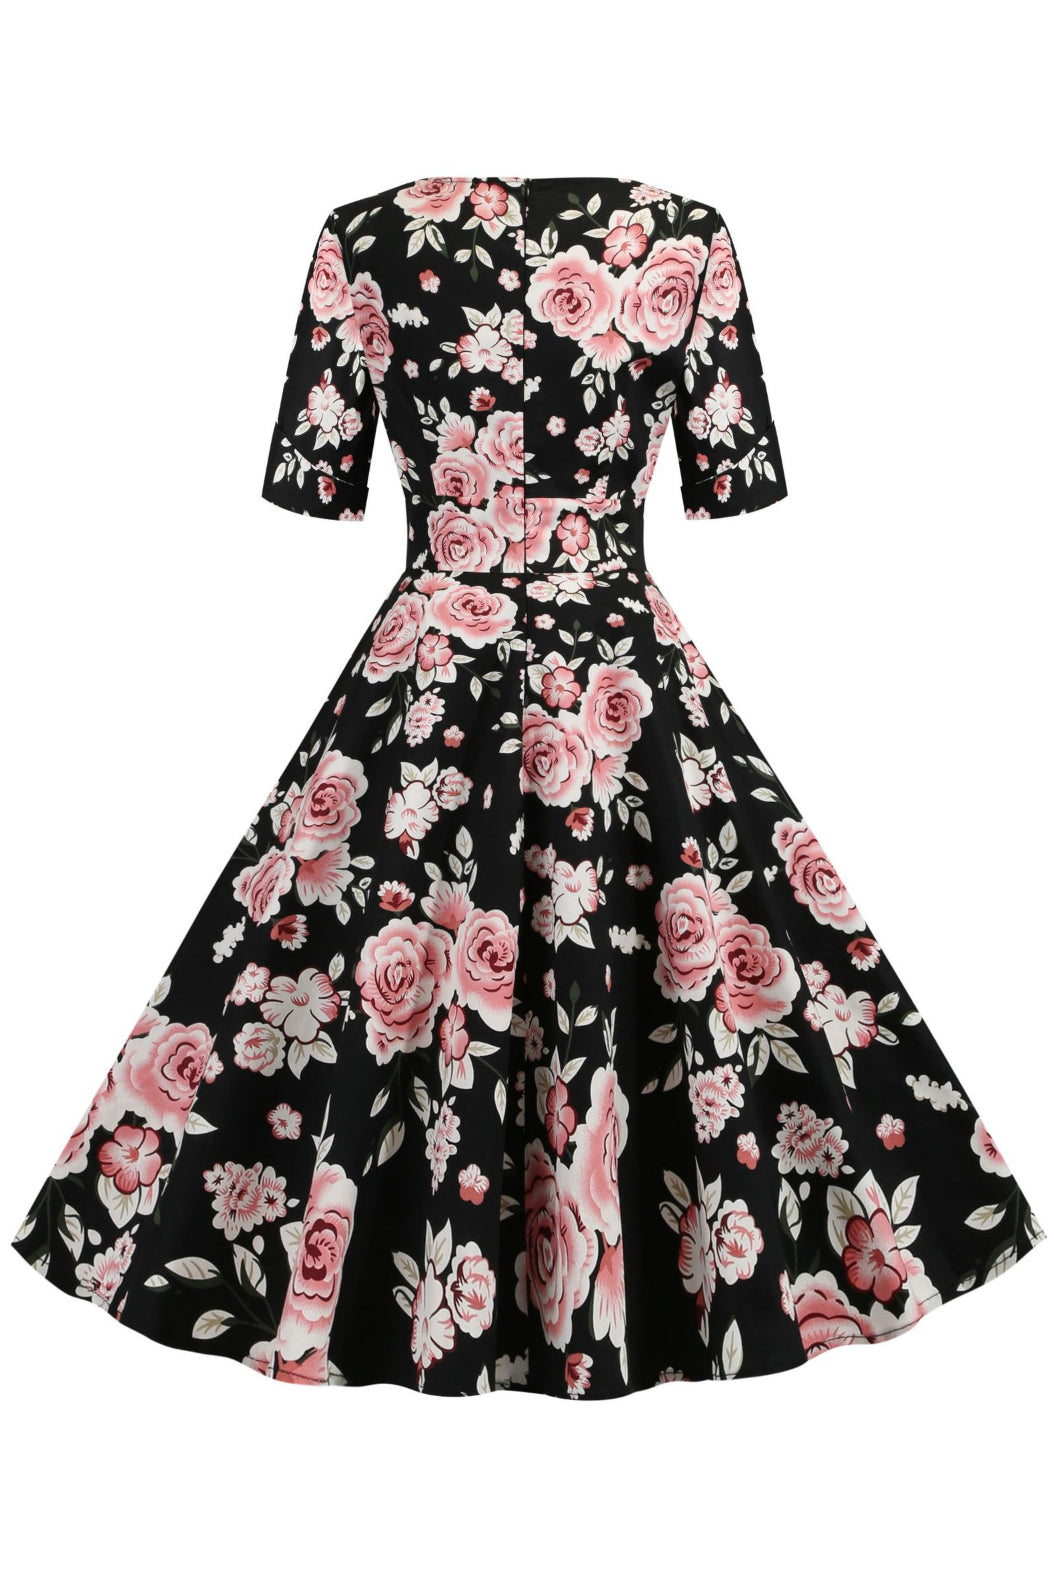 Black Floral Surplice Short Sleeves A-line Vintage Dress